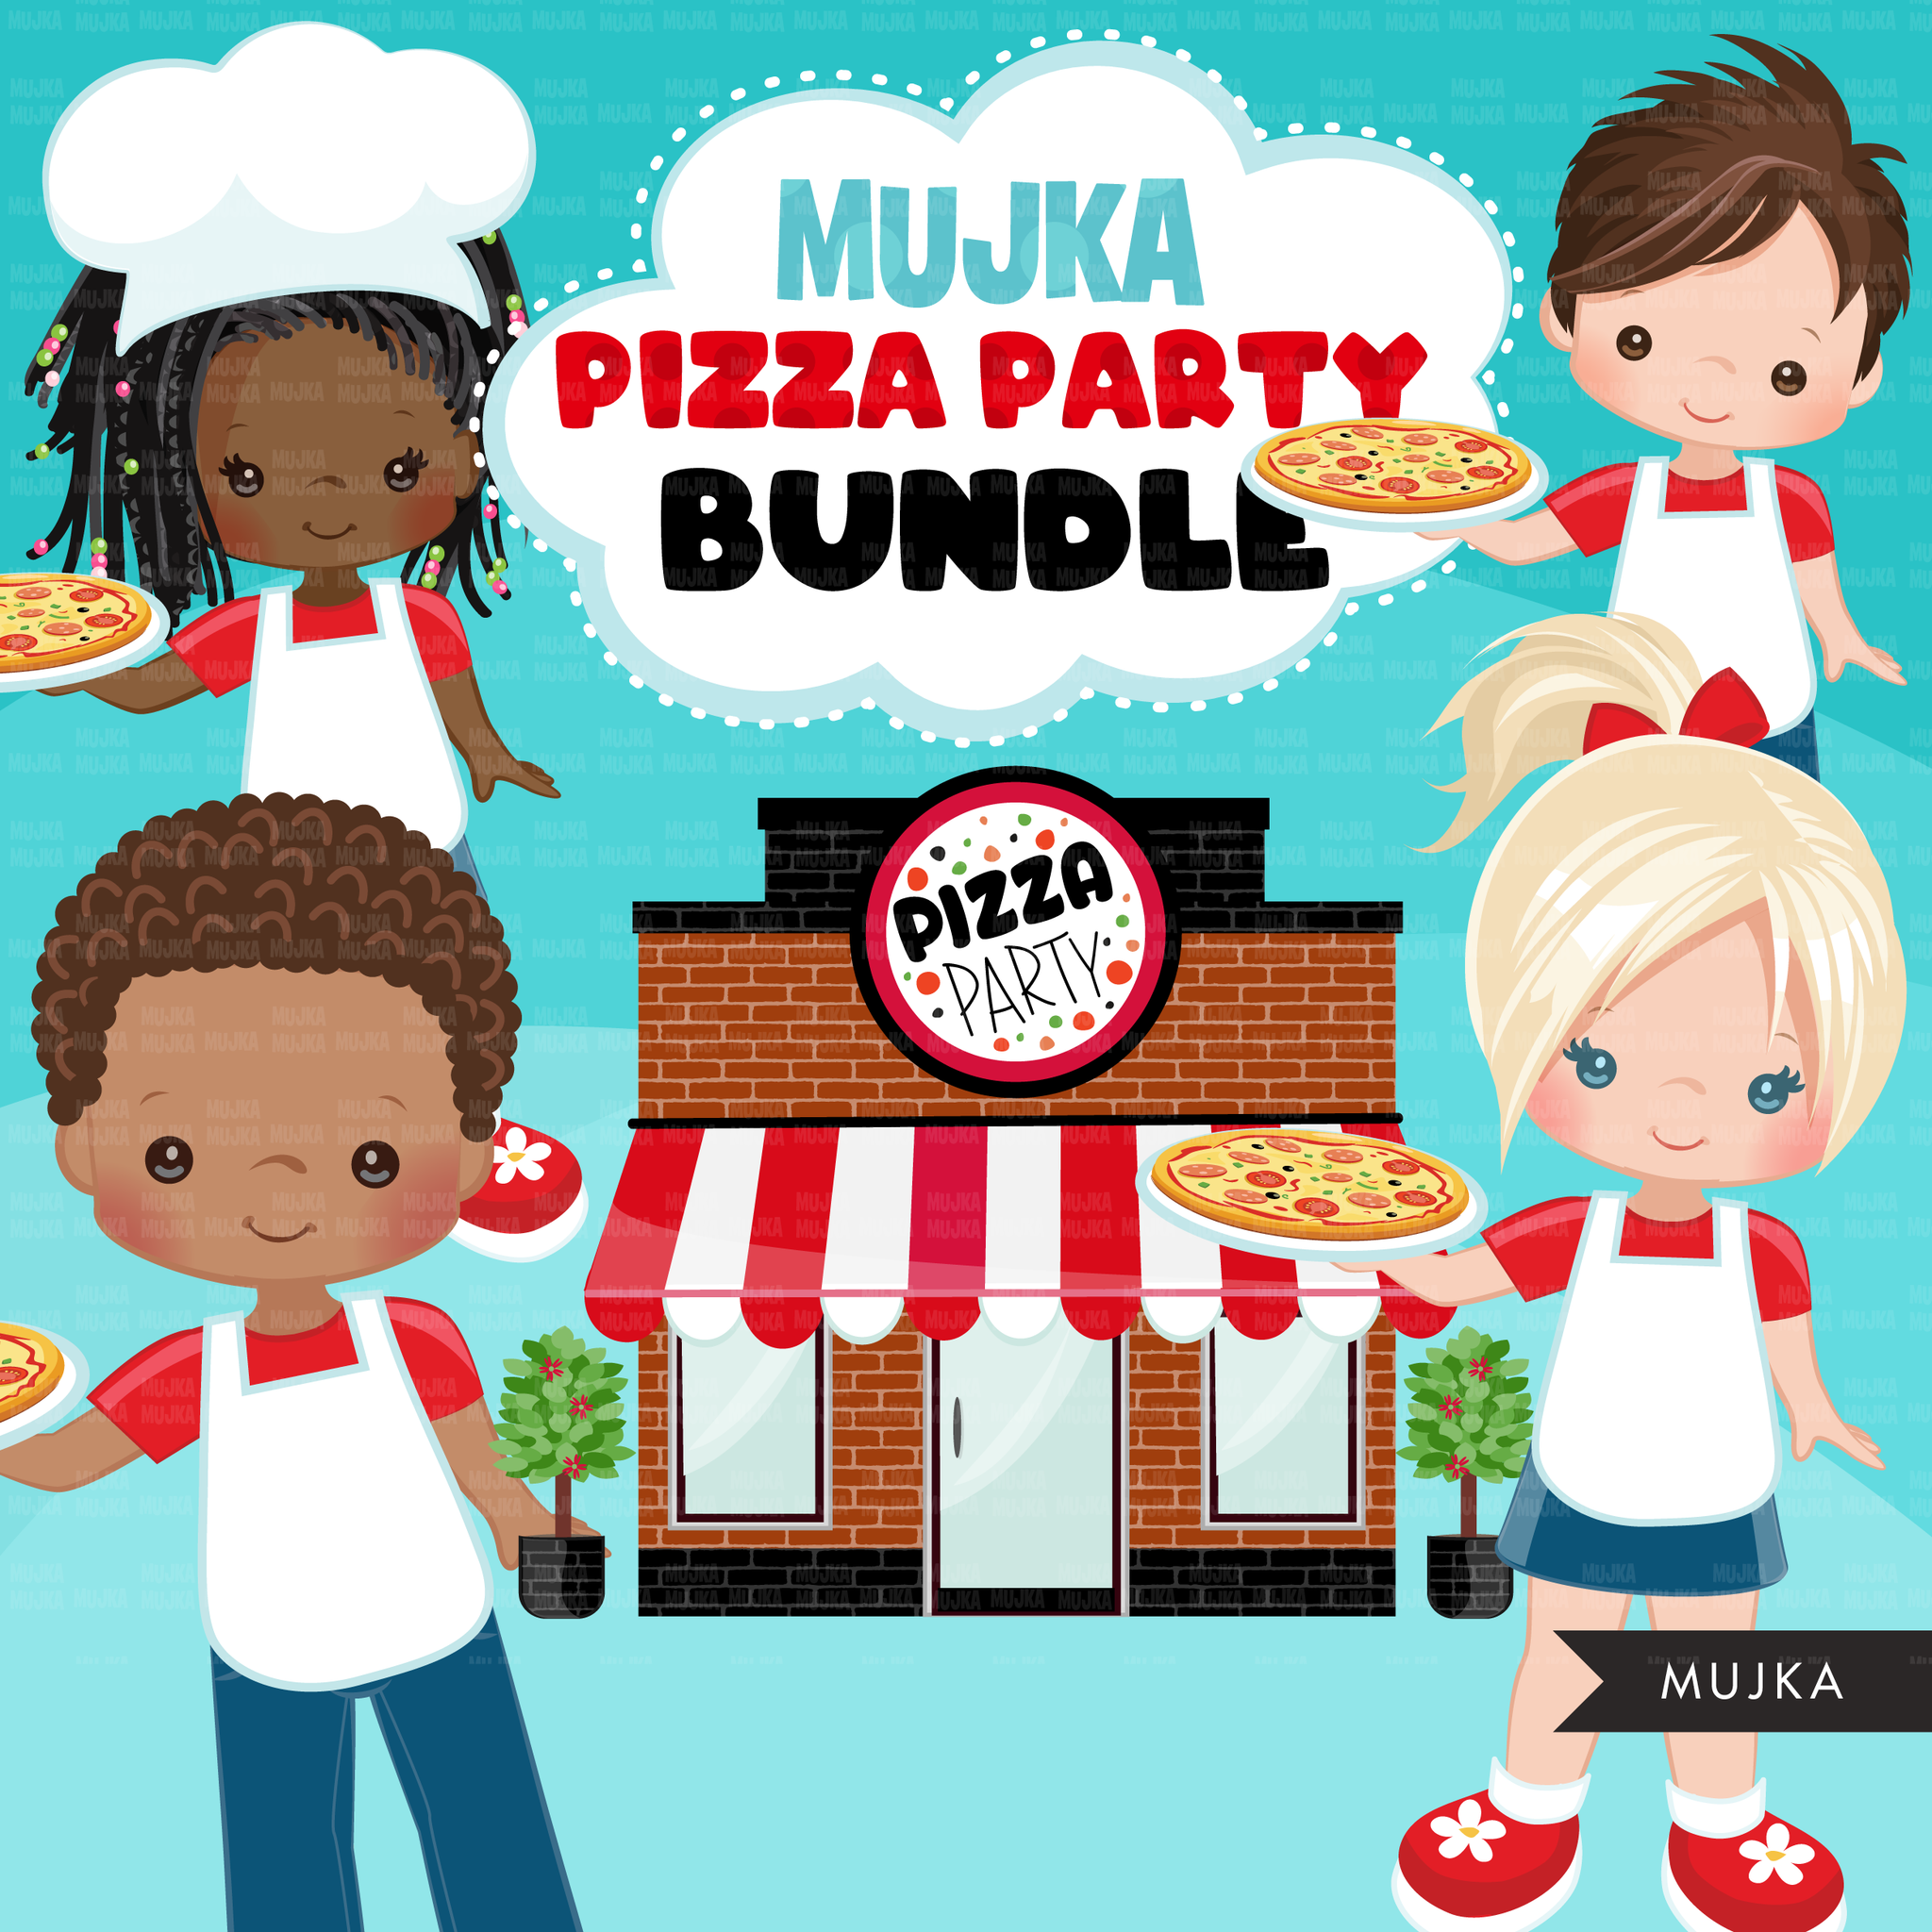 Paquete de imágenes prediseñadas de pizza, chef de pizza, diseños de sublimación de paquetes de pizzería descarga digital, cumpleaños de pizza png, niños de pizza, niño y niña negros